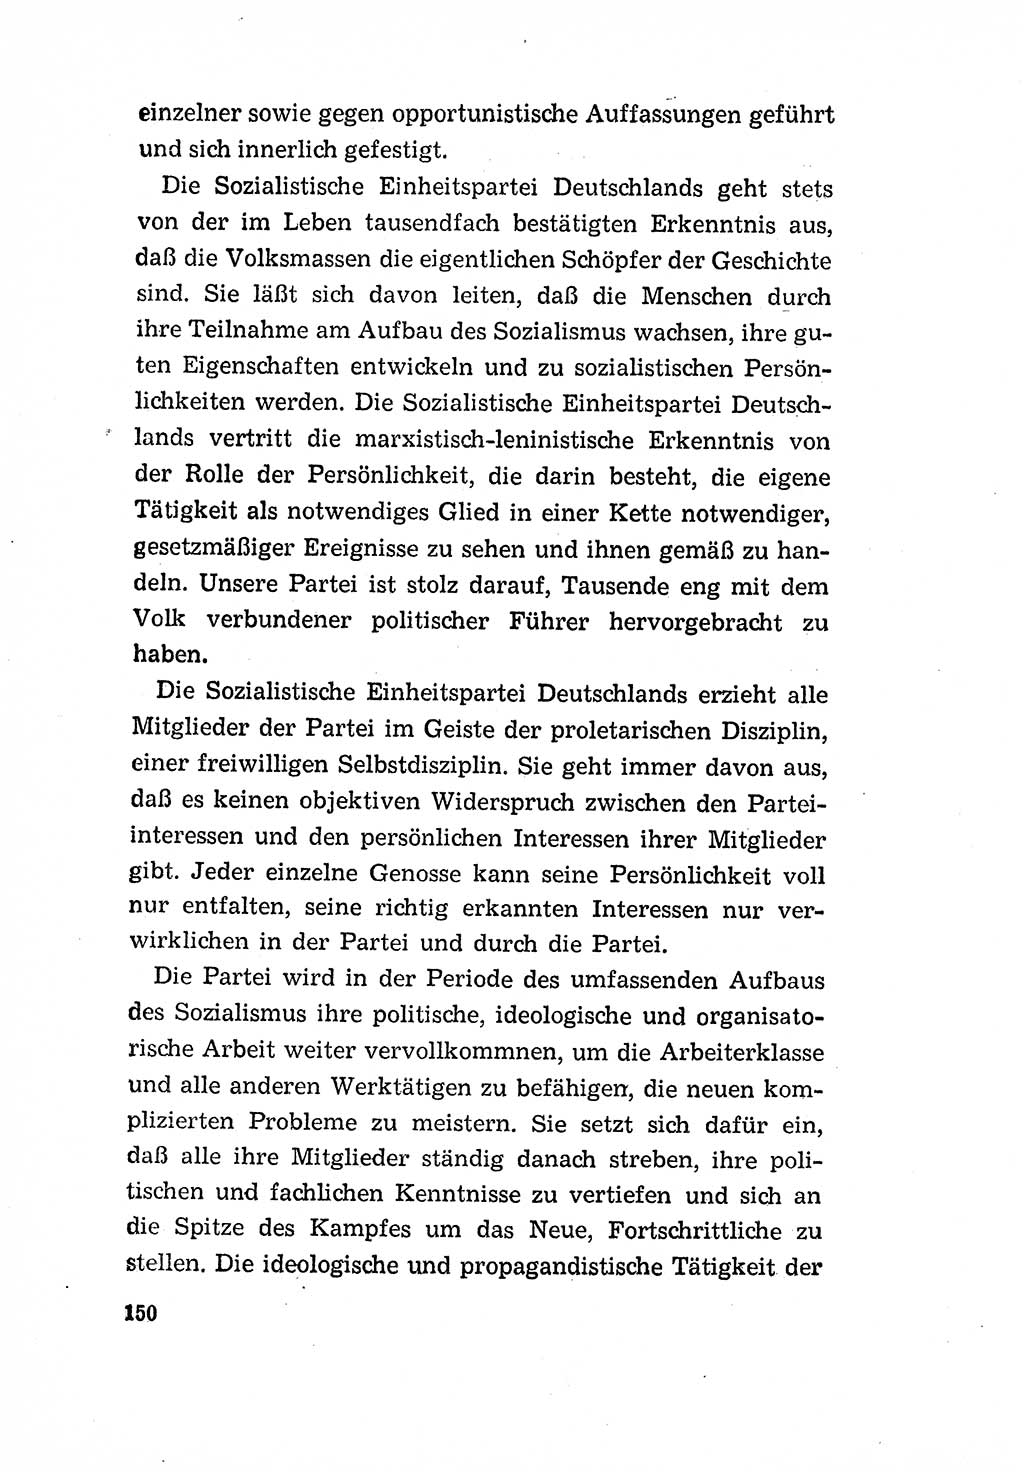 Programm der Sozialistischen Einheitspartei Deutschlands (SED) [Deutsche Demokratische Republik (DDR)] 1963, Seite 150 (Progr. SED DDR 1963, S. 150)